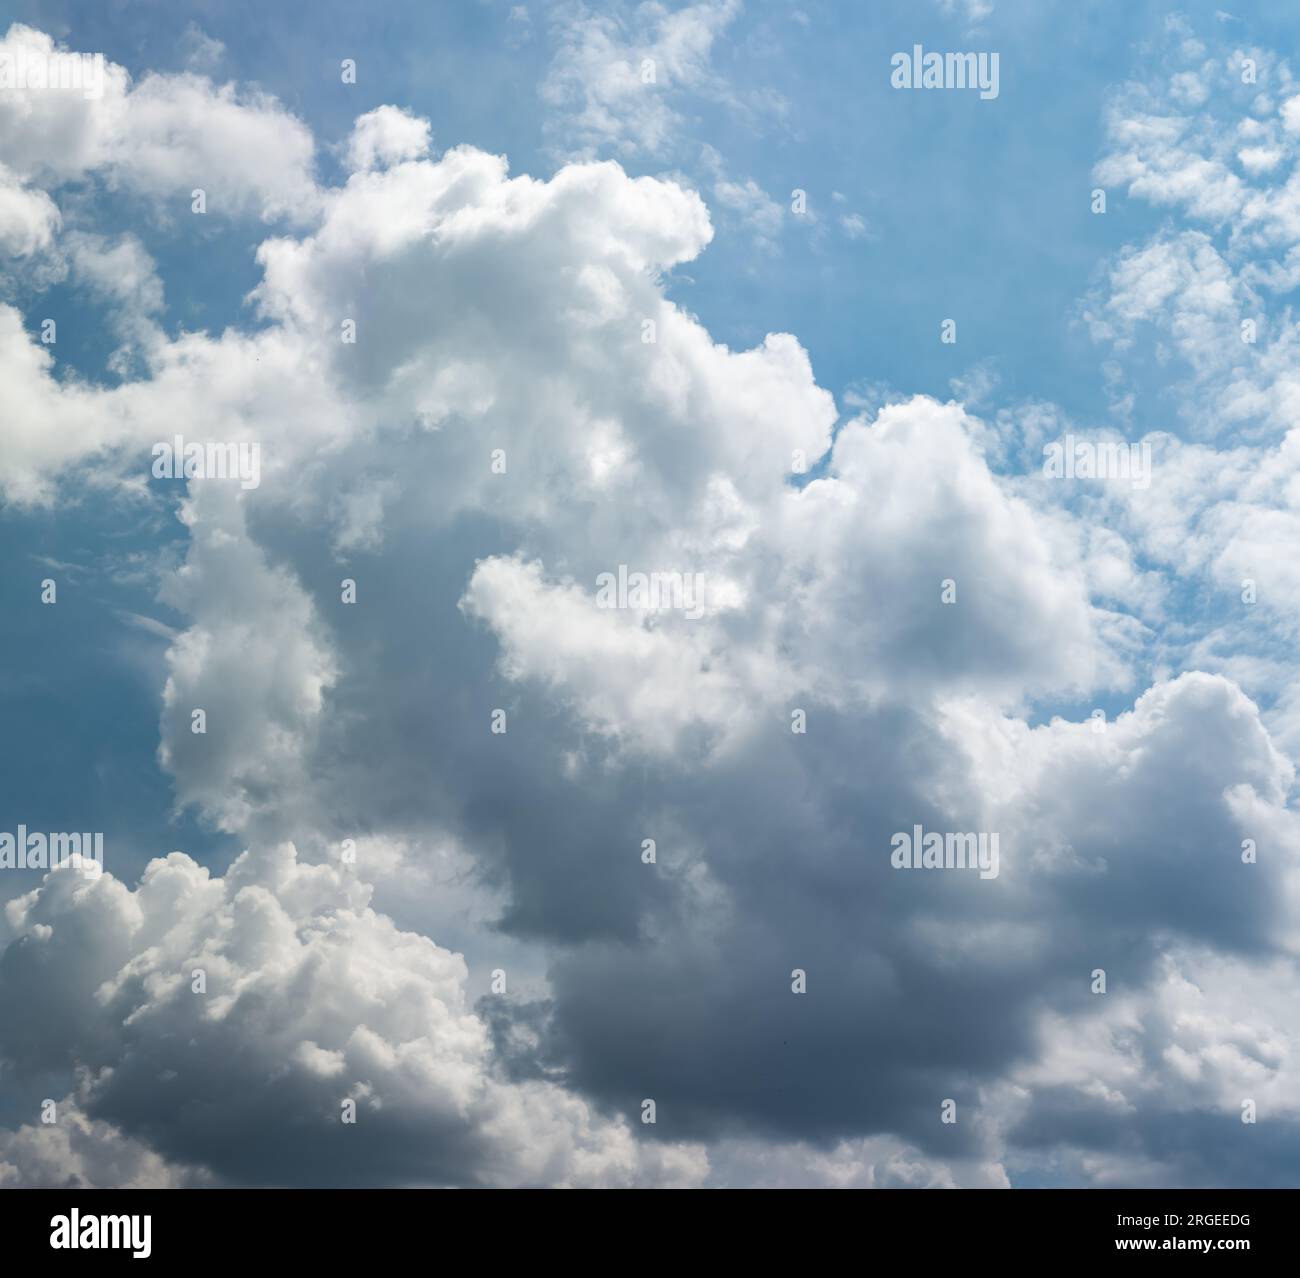 Towering cumulus (cumulus congestus) clouds. Stock Photo